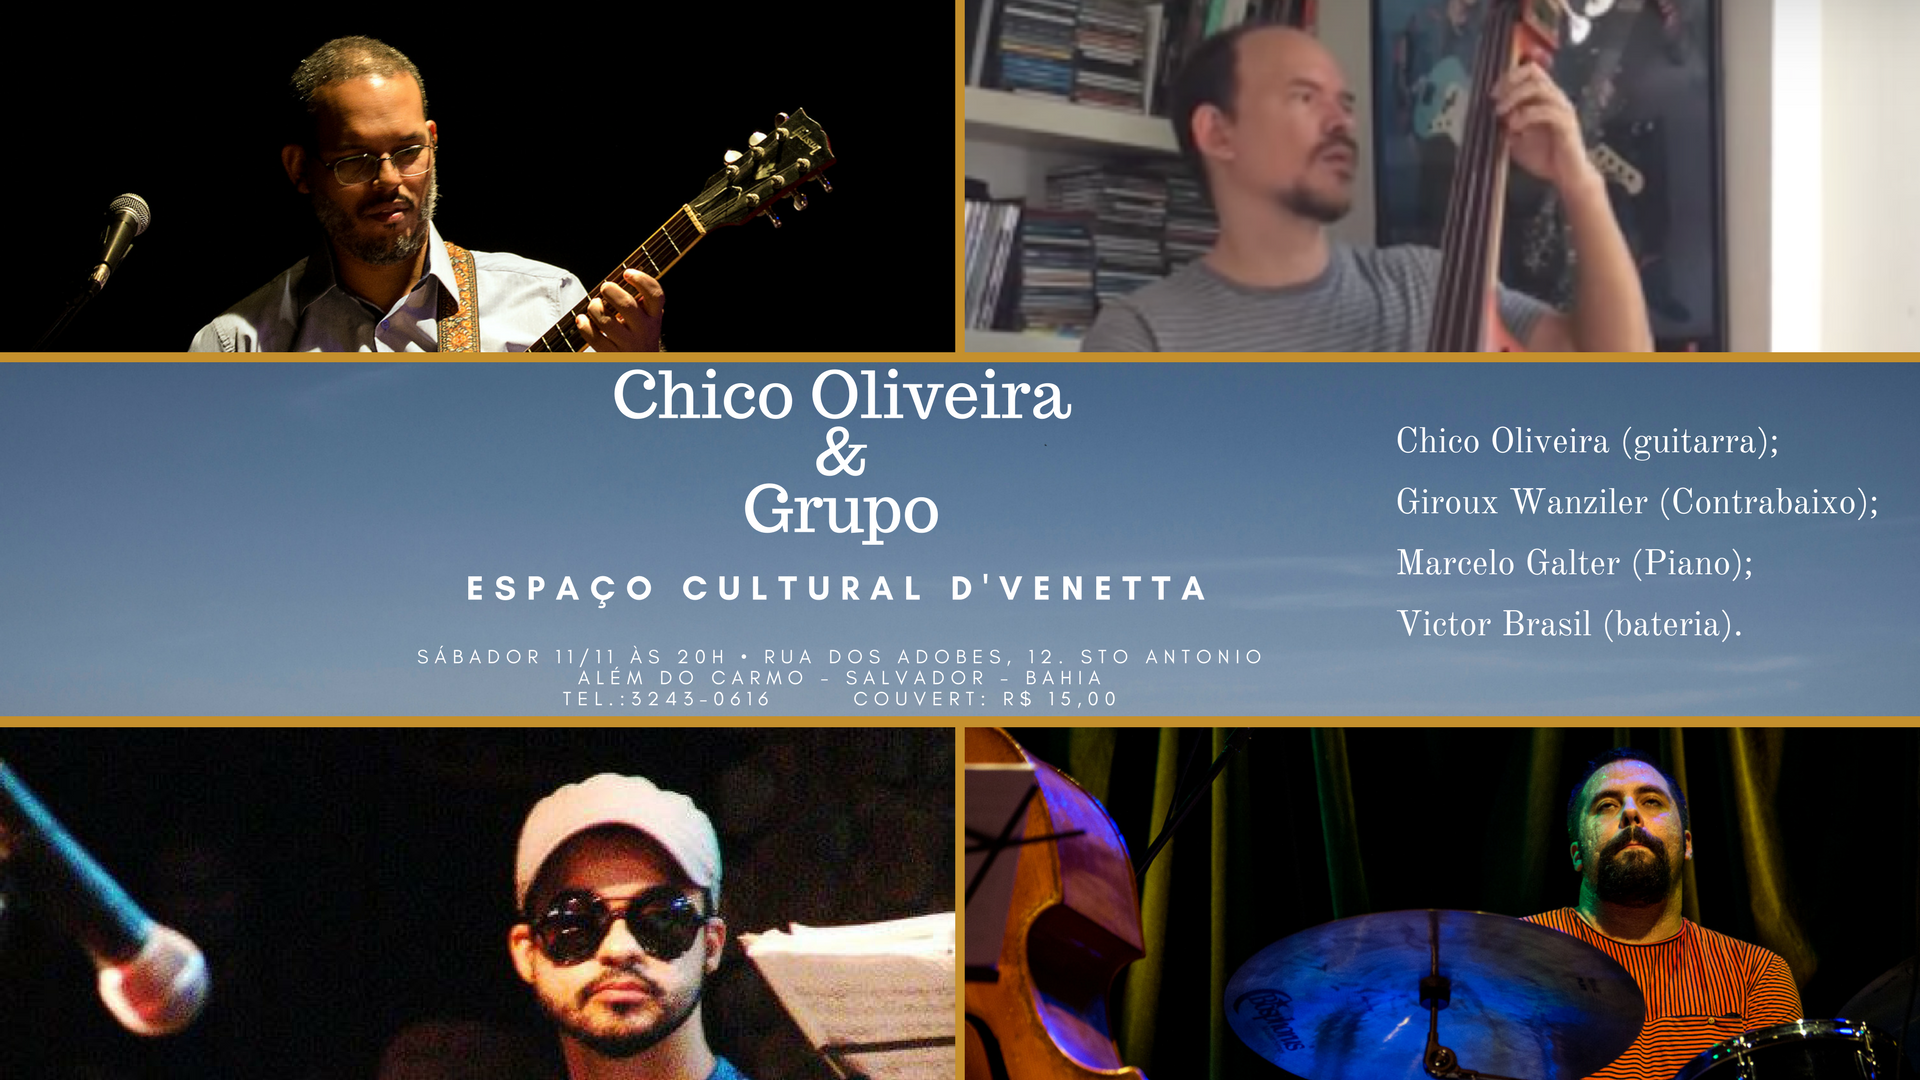 Chico Oliveira e grupo Espaço Cultural D'Venetta - Giroux Wanziler Marcelo Galter Victor Brasil 20171111